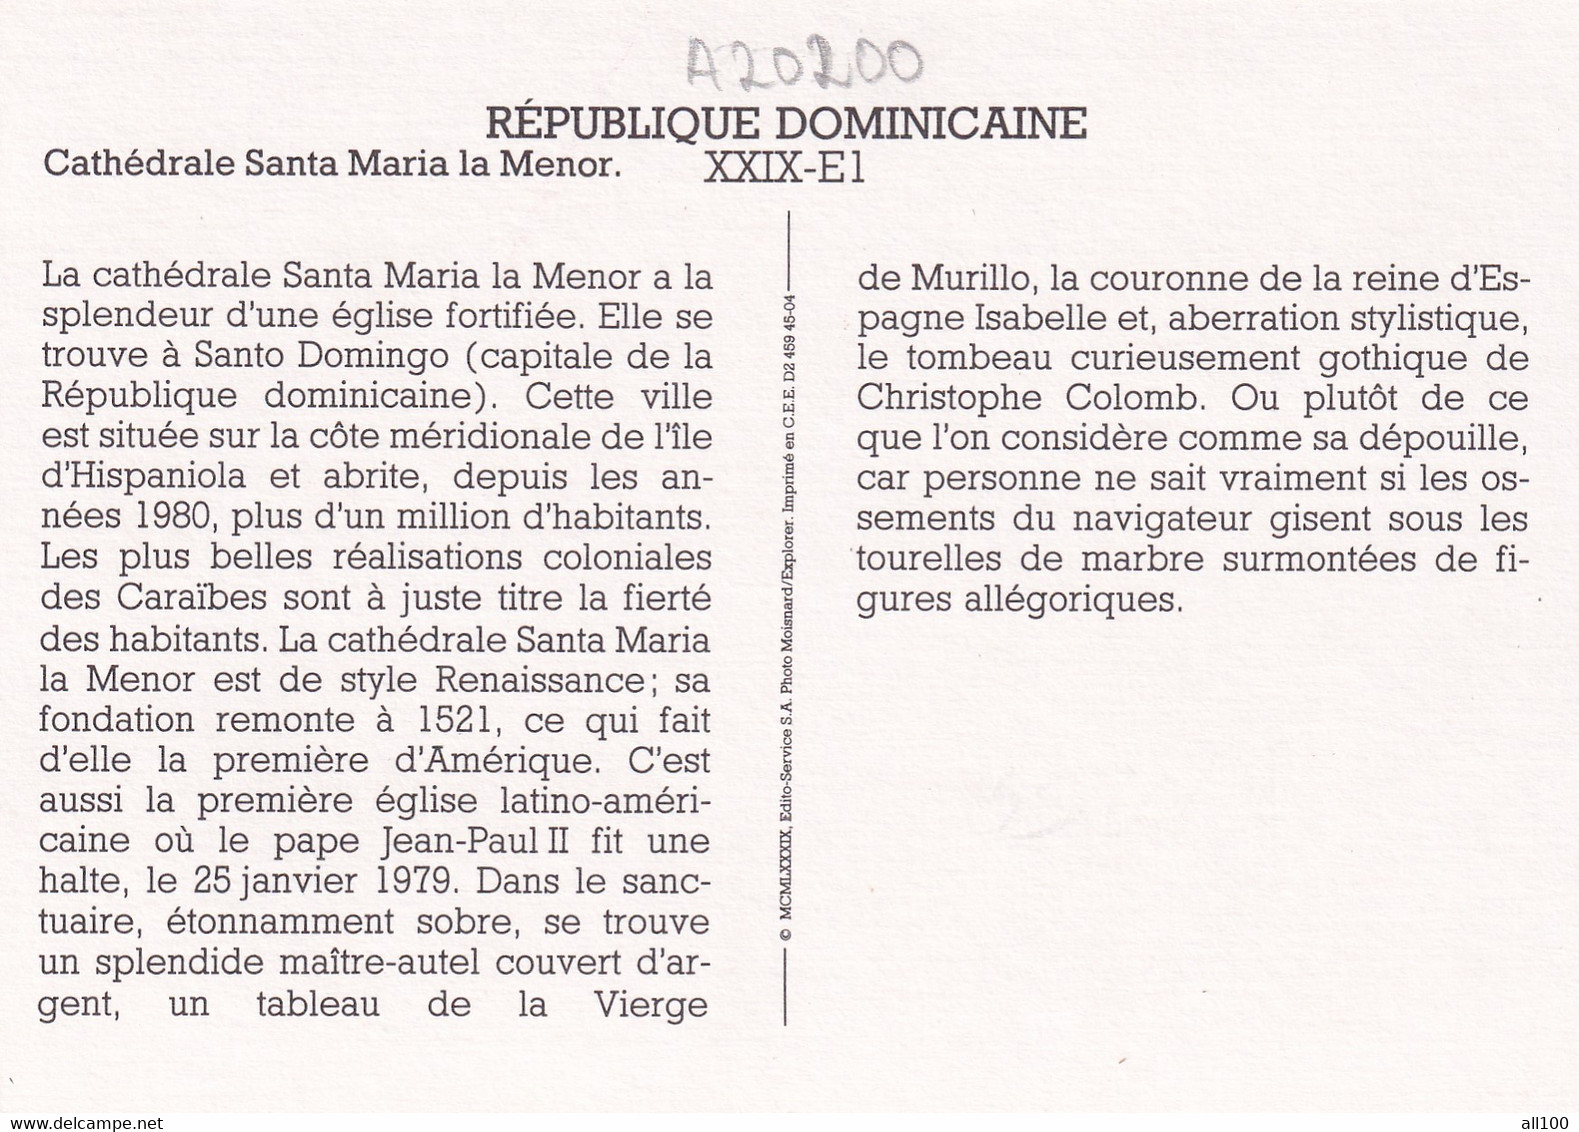 A20200 - CATHEDRALE SANTA MARIA LA MENOR DOMINICAN REPUBLIC REPUBLIQUE DOMINICAINE MOISNARD EXPLORER - Dominican Republic